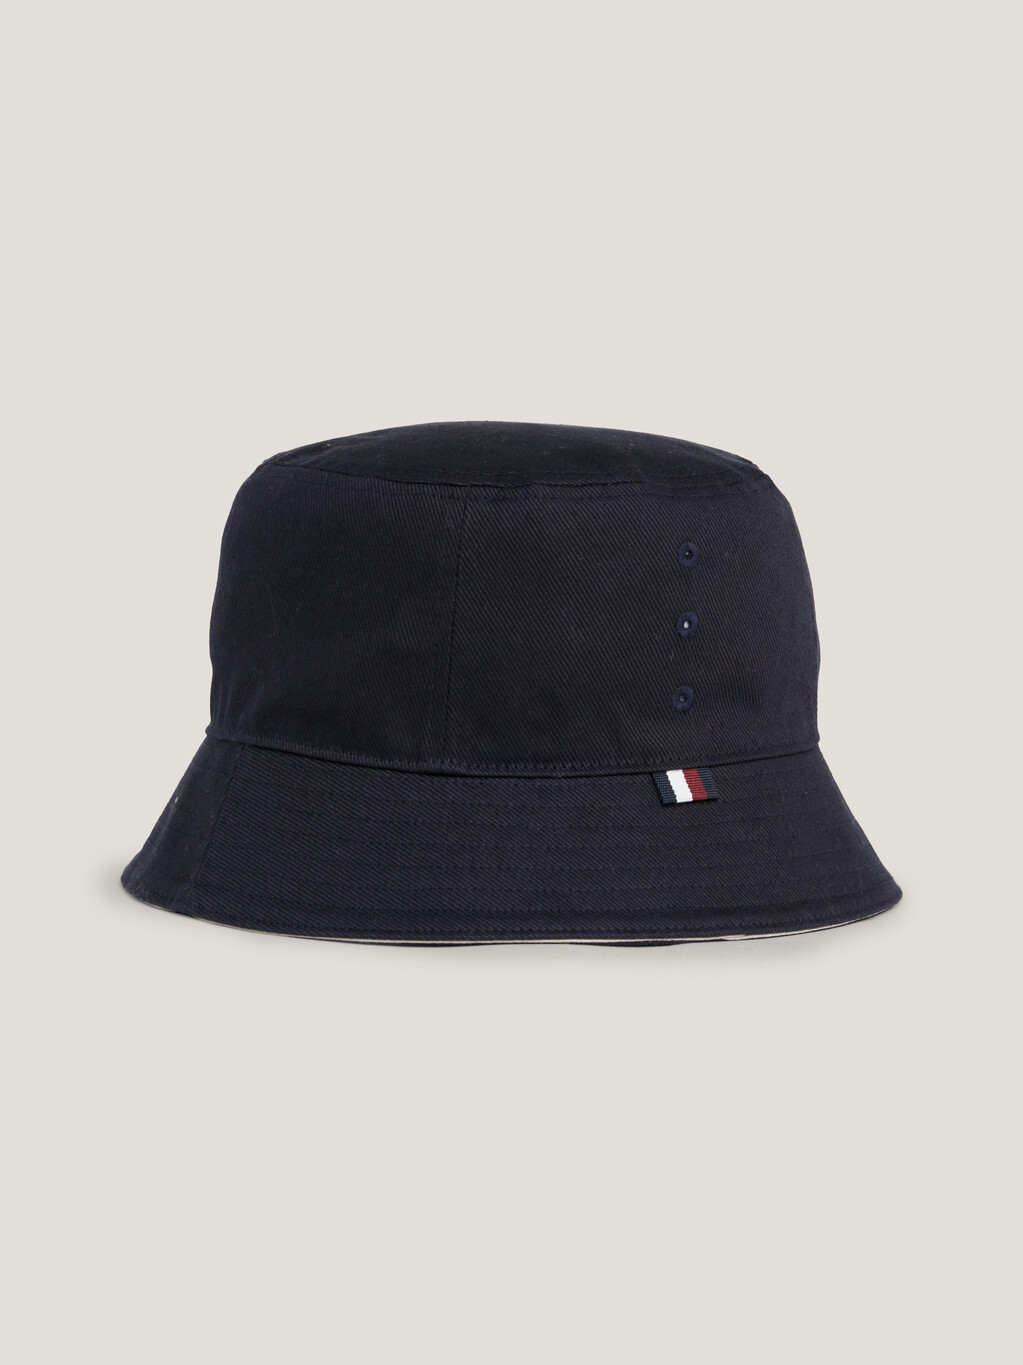 TH Monogram漁夫帽, Space Blue, hi-res